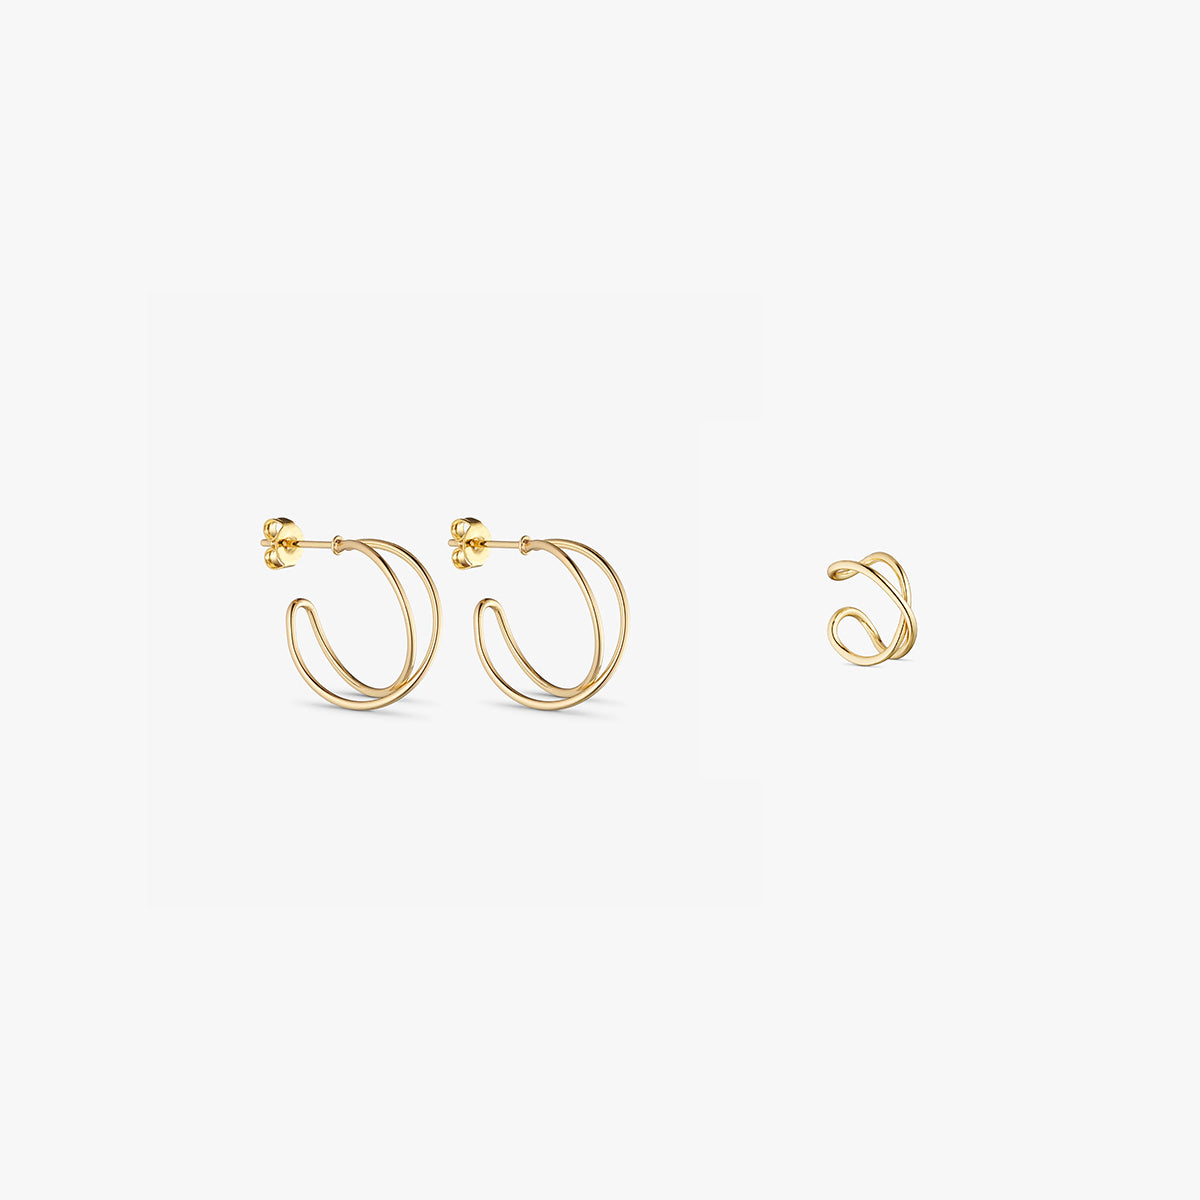 Jewelery set - Mia Earrings SMALL / Mia Earcuff - 18 carat gold-plated